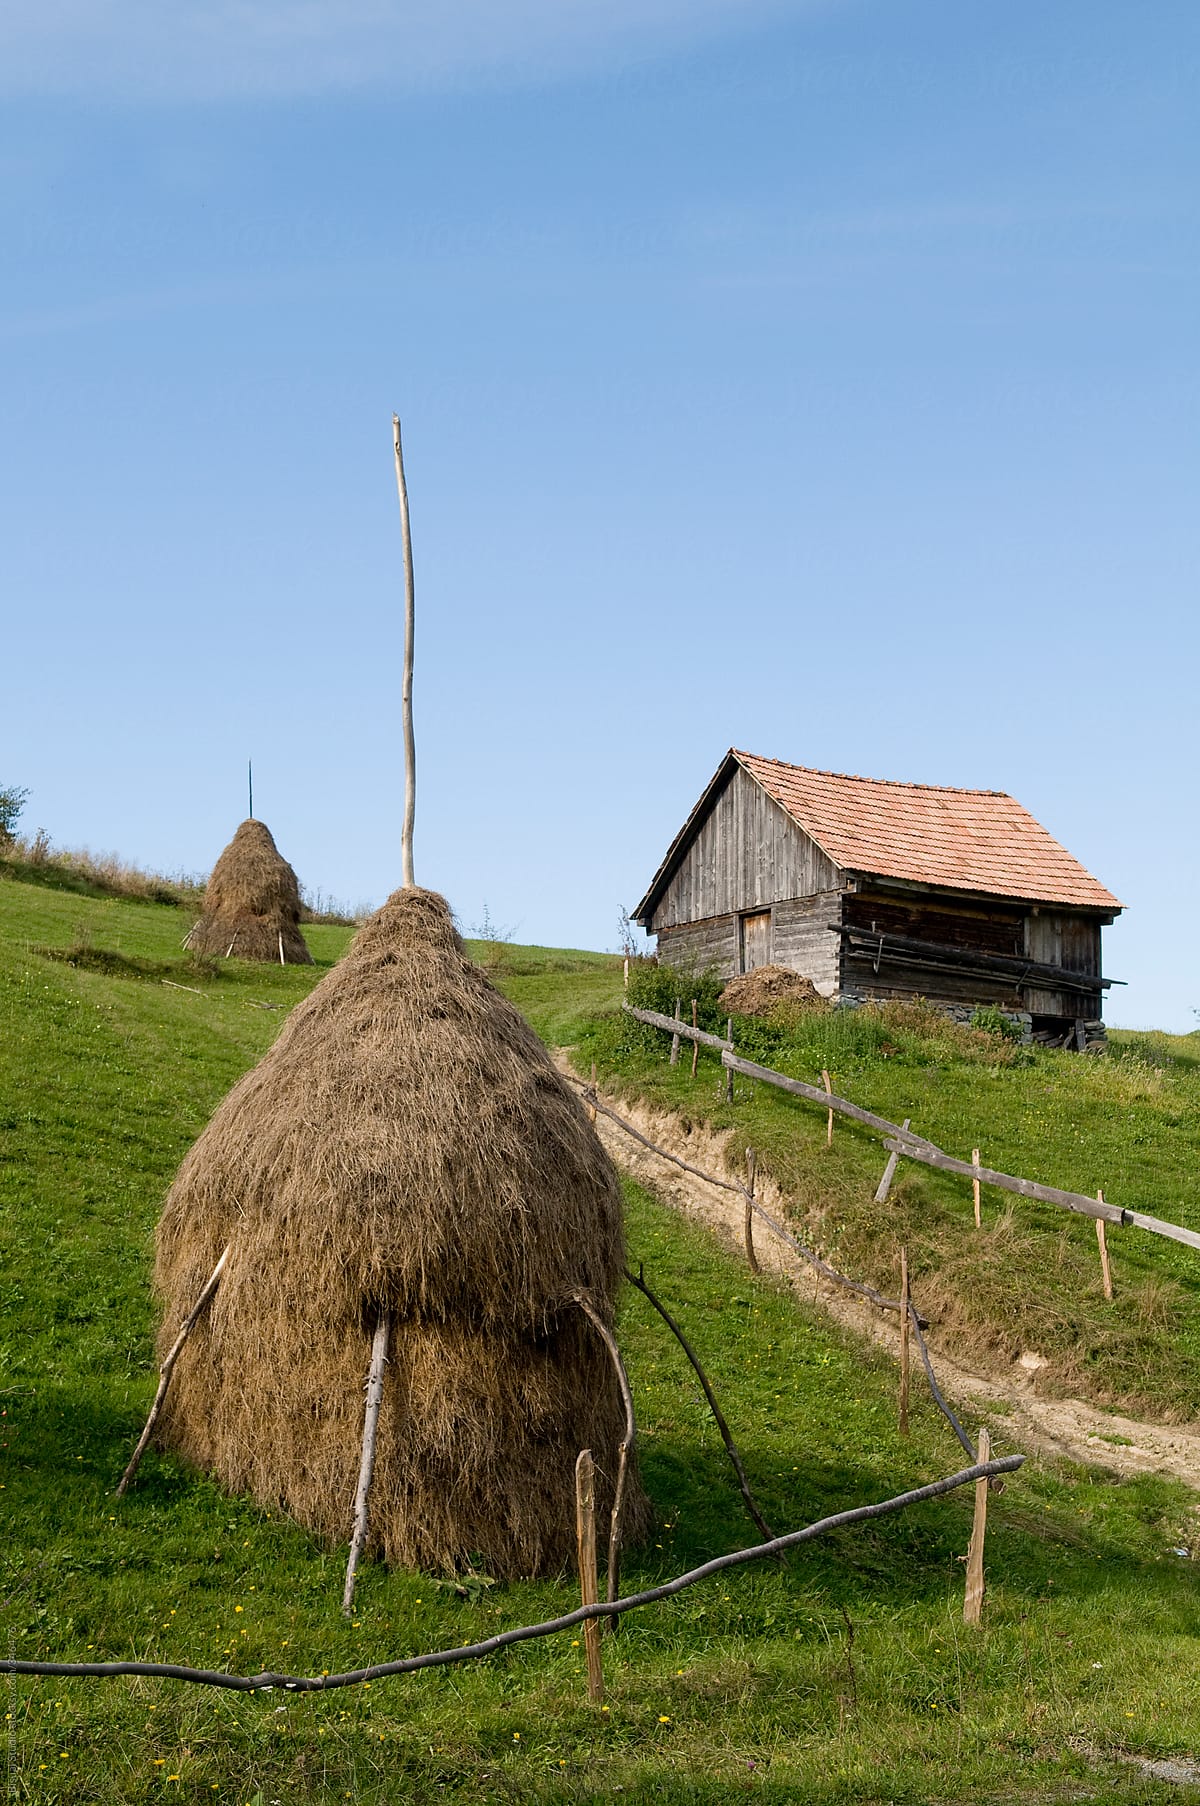 Haystack in Romania